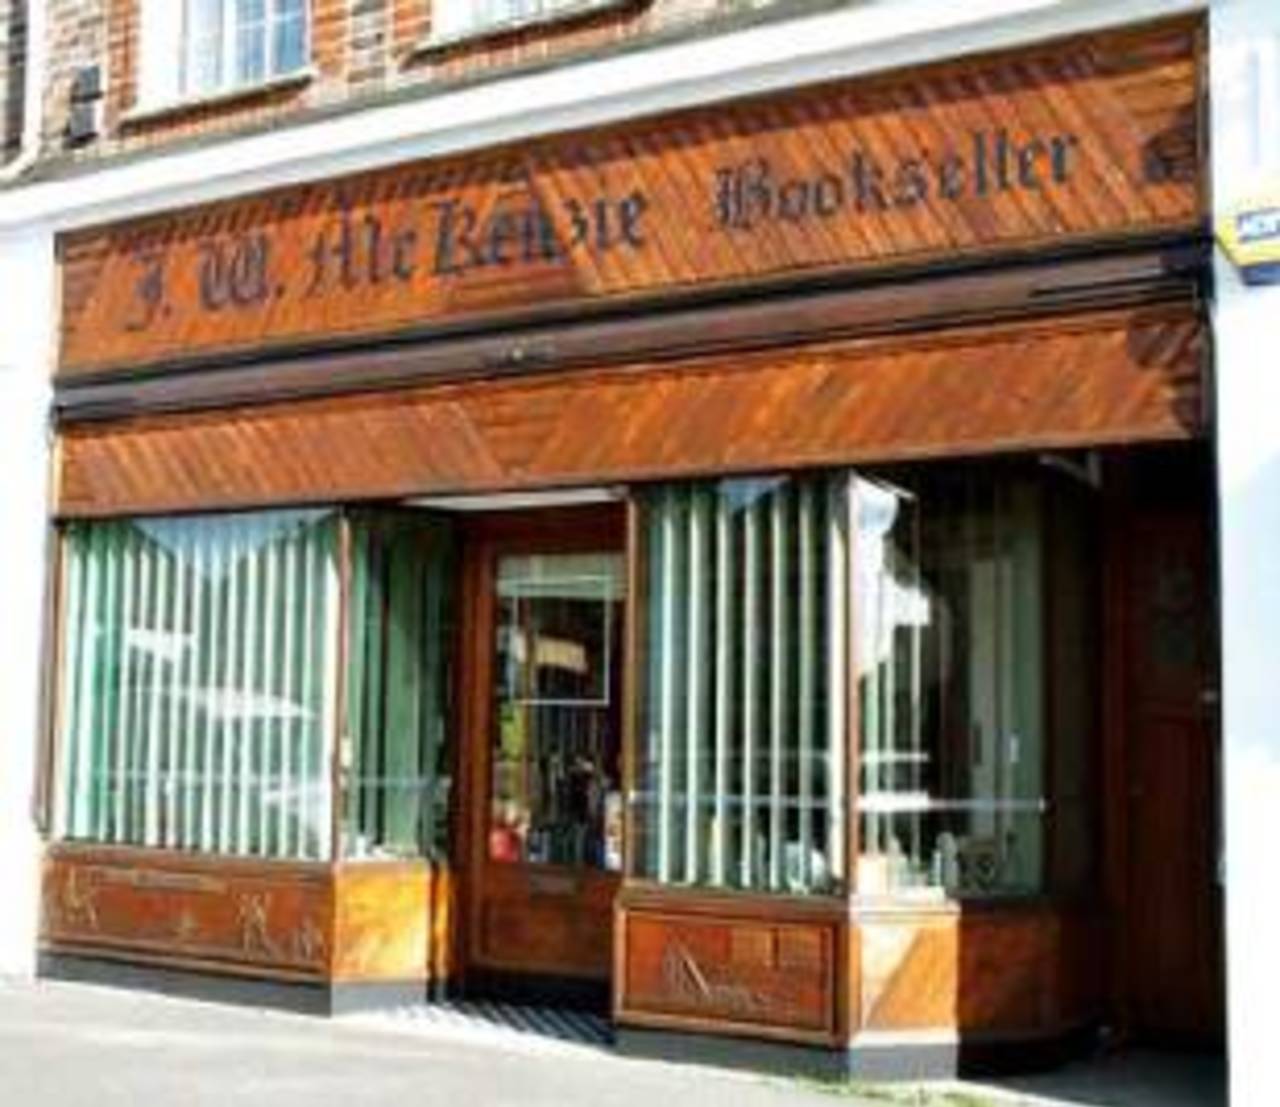 The JW McKenzie cricket bookshop in Surrey